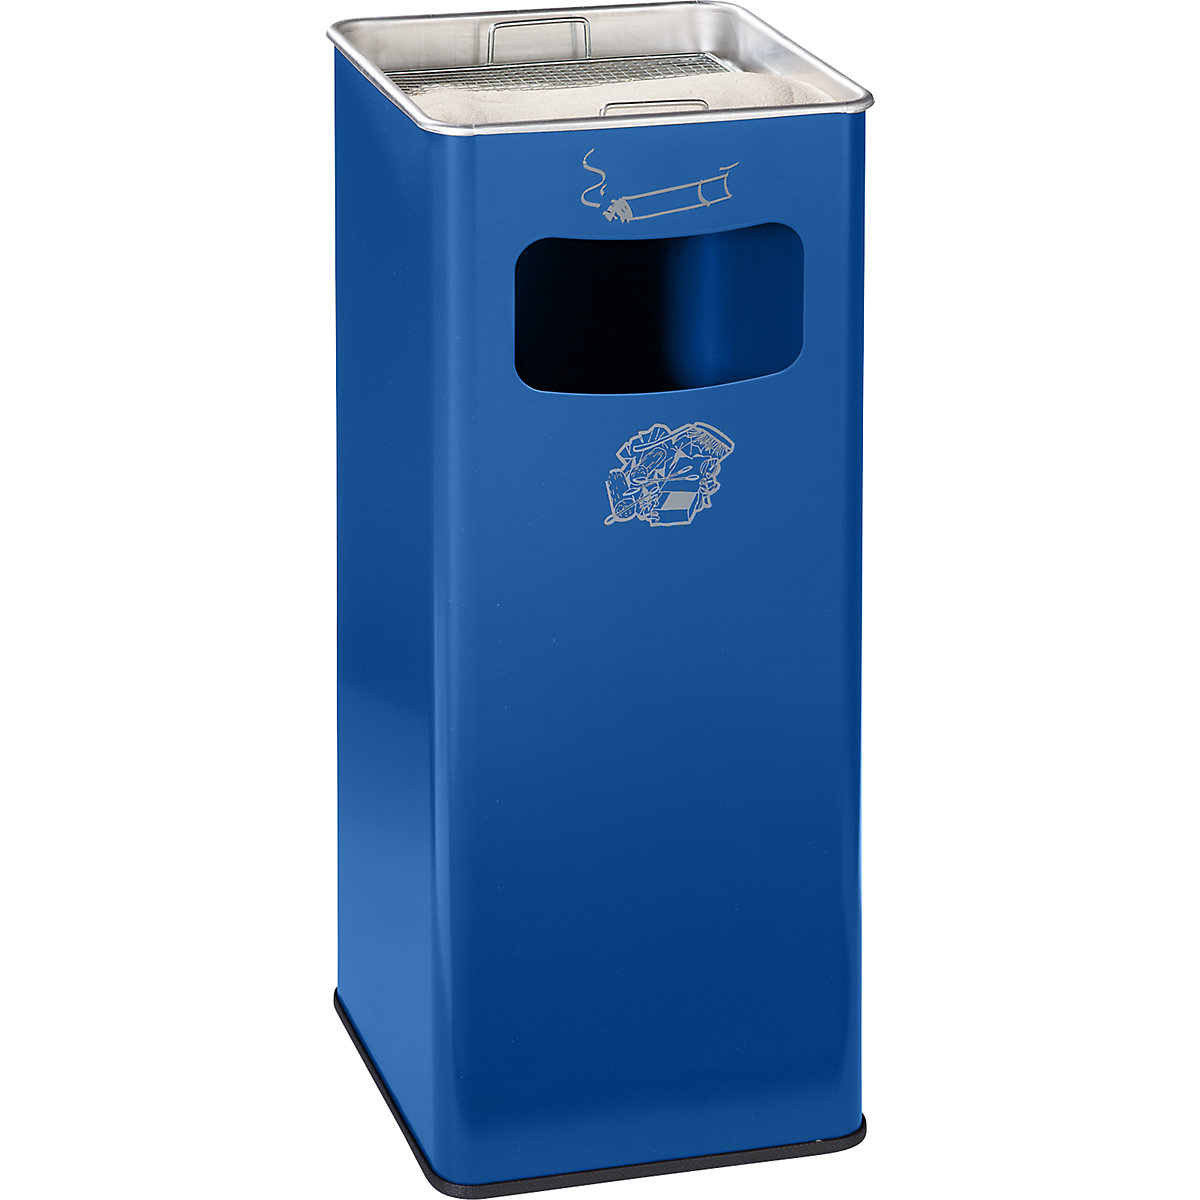 VAR – Kombinovaný popelník, objem 53 l, š x v x h 330 x 705 x 330 mm, ocelový plech, hořcově modrá